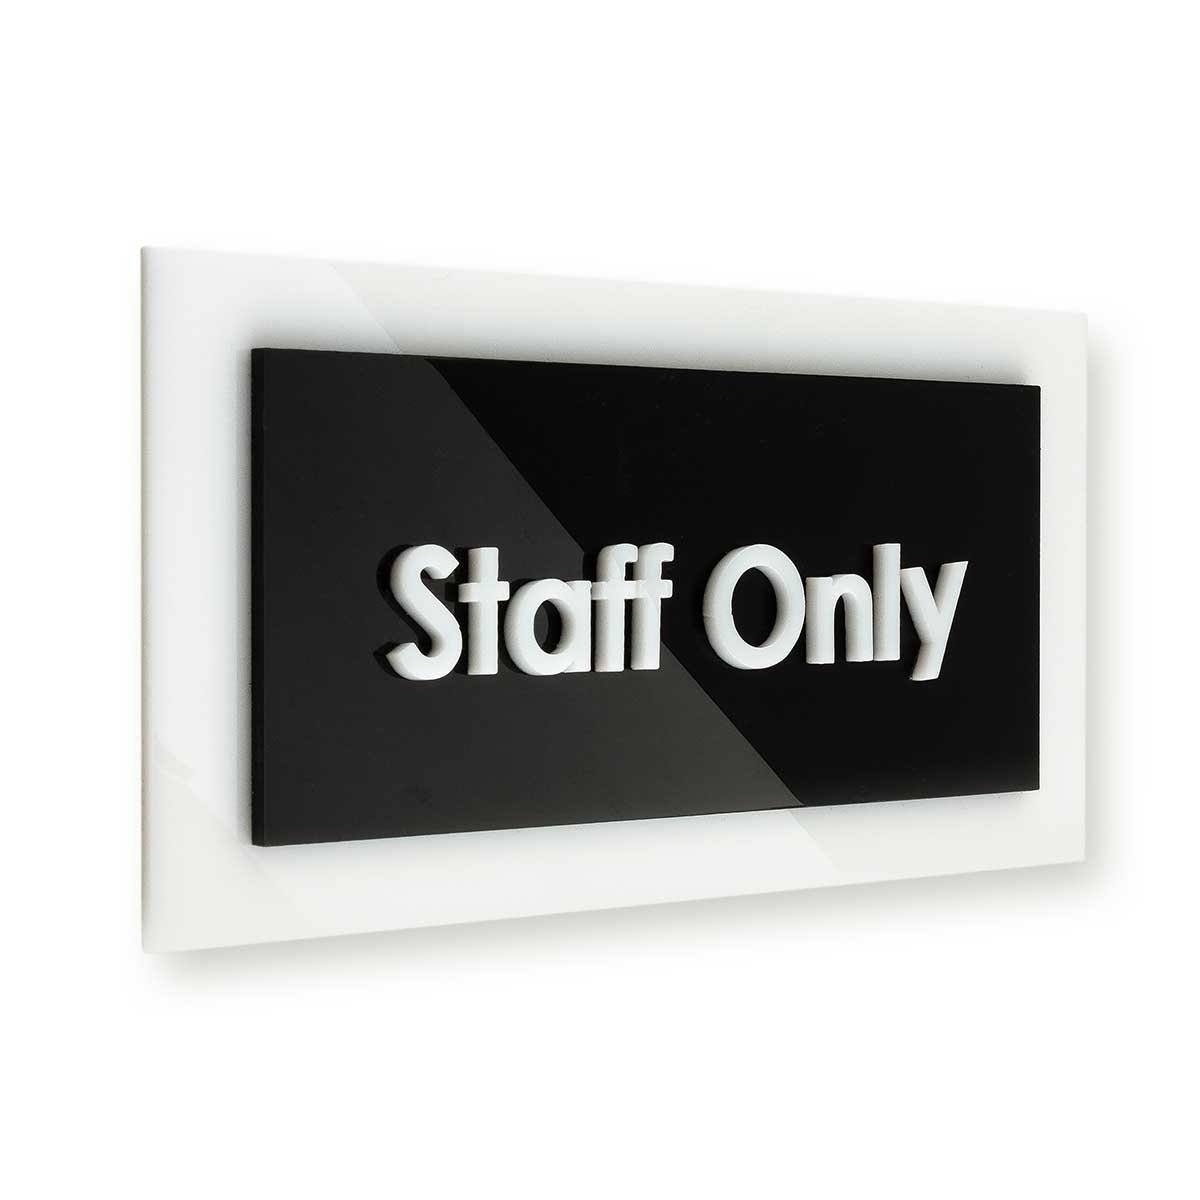 Door Signs - Utility Room Sign - Acrylic Door Plate "Simple" Design